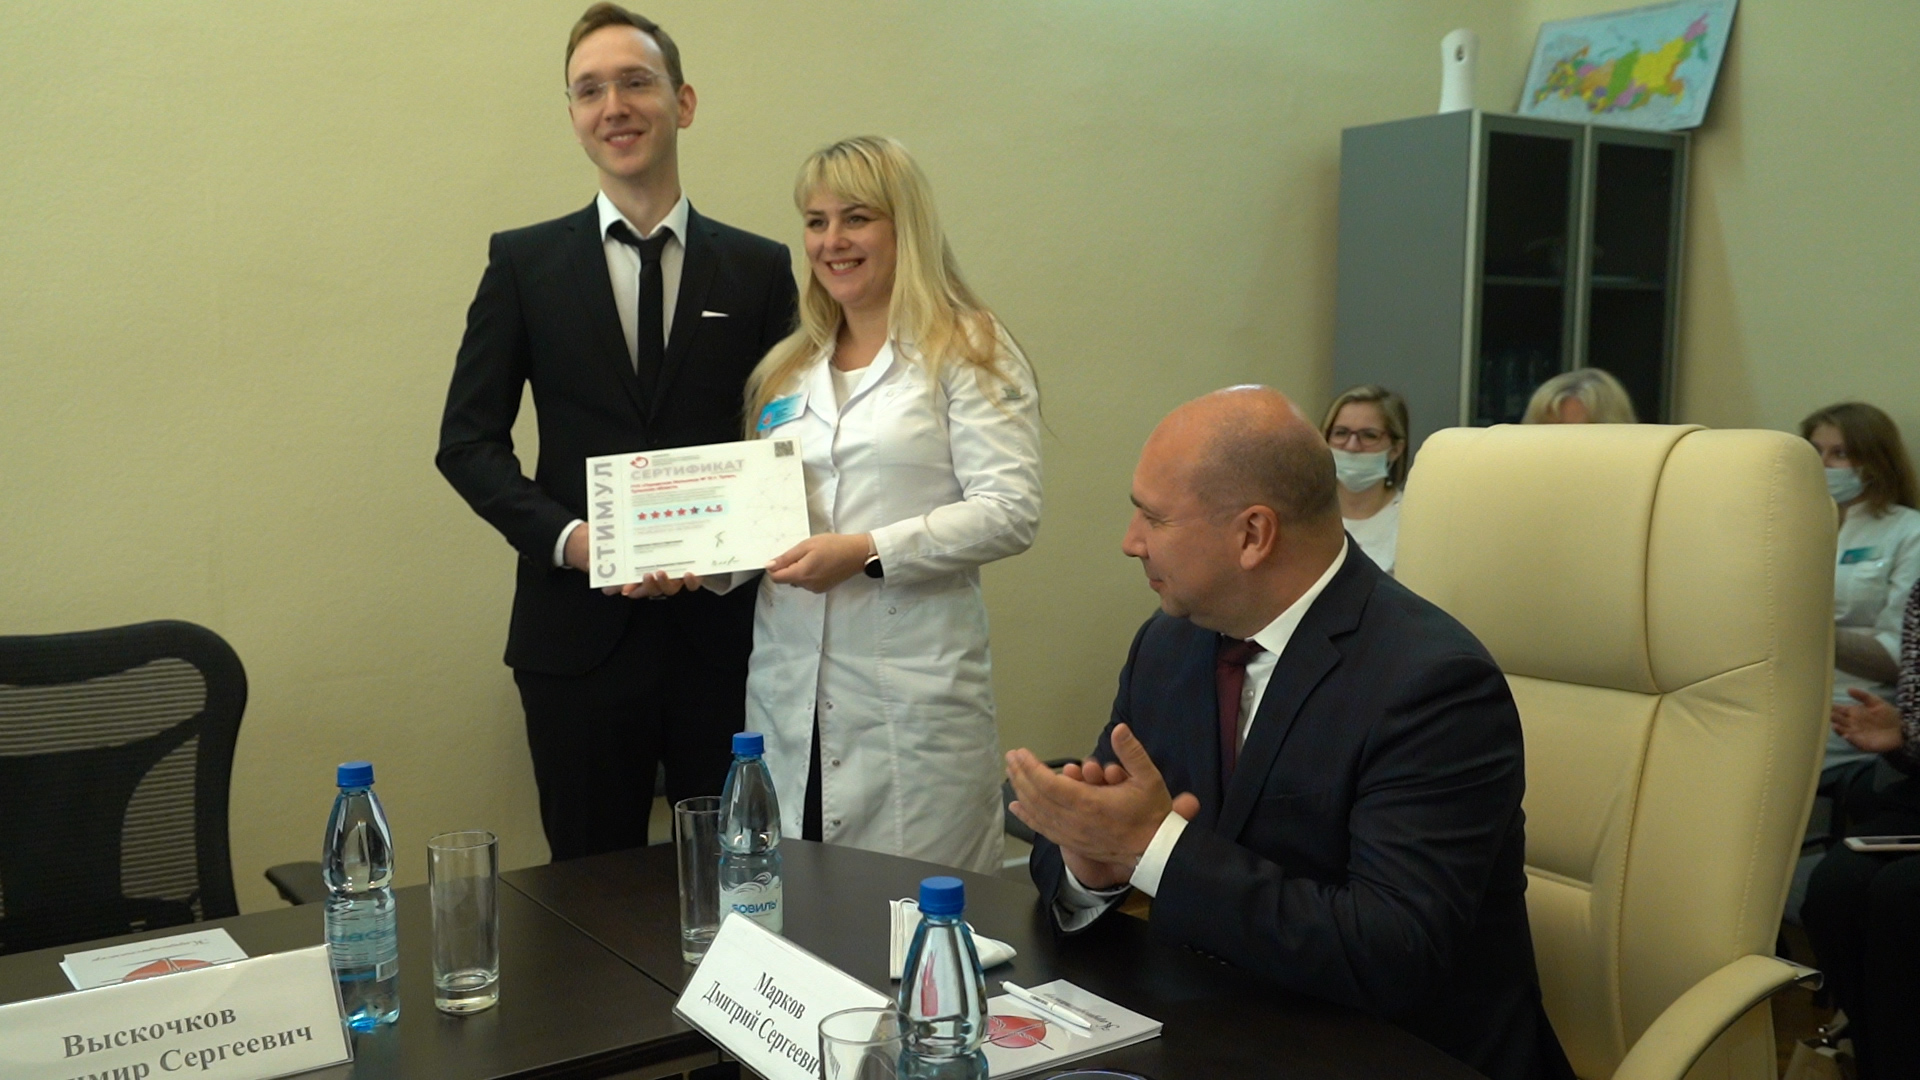 Кардиодиспансер в Туле стал одним из лучших в России по уровню удовлетворенности пациентов